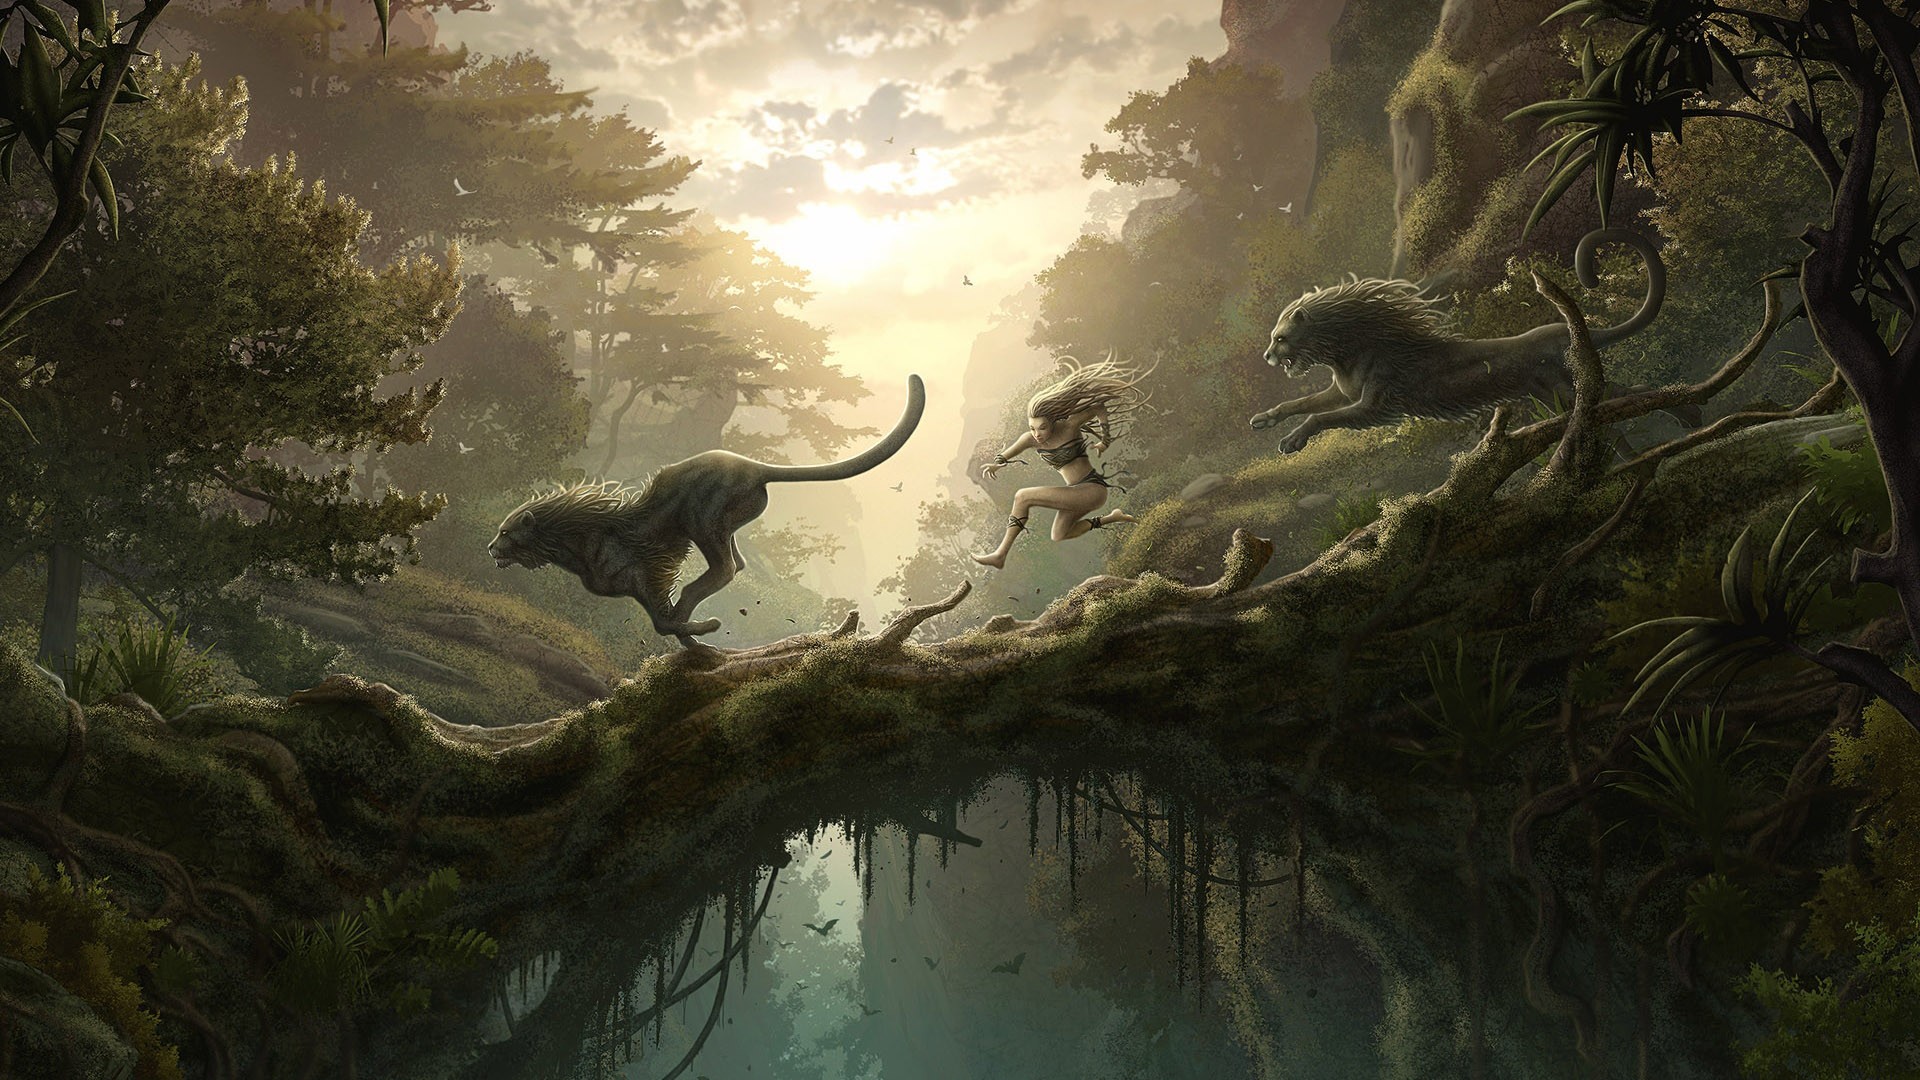 Fantasy landscape: One Amongst the Wilderness by Kerem Beyit - Desktop wallpaper.